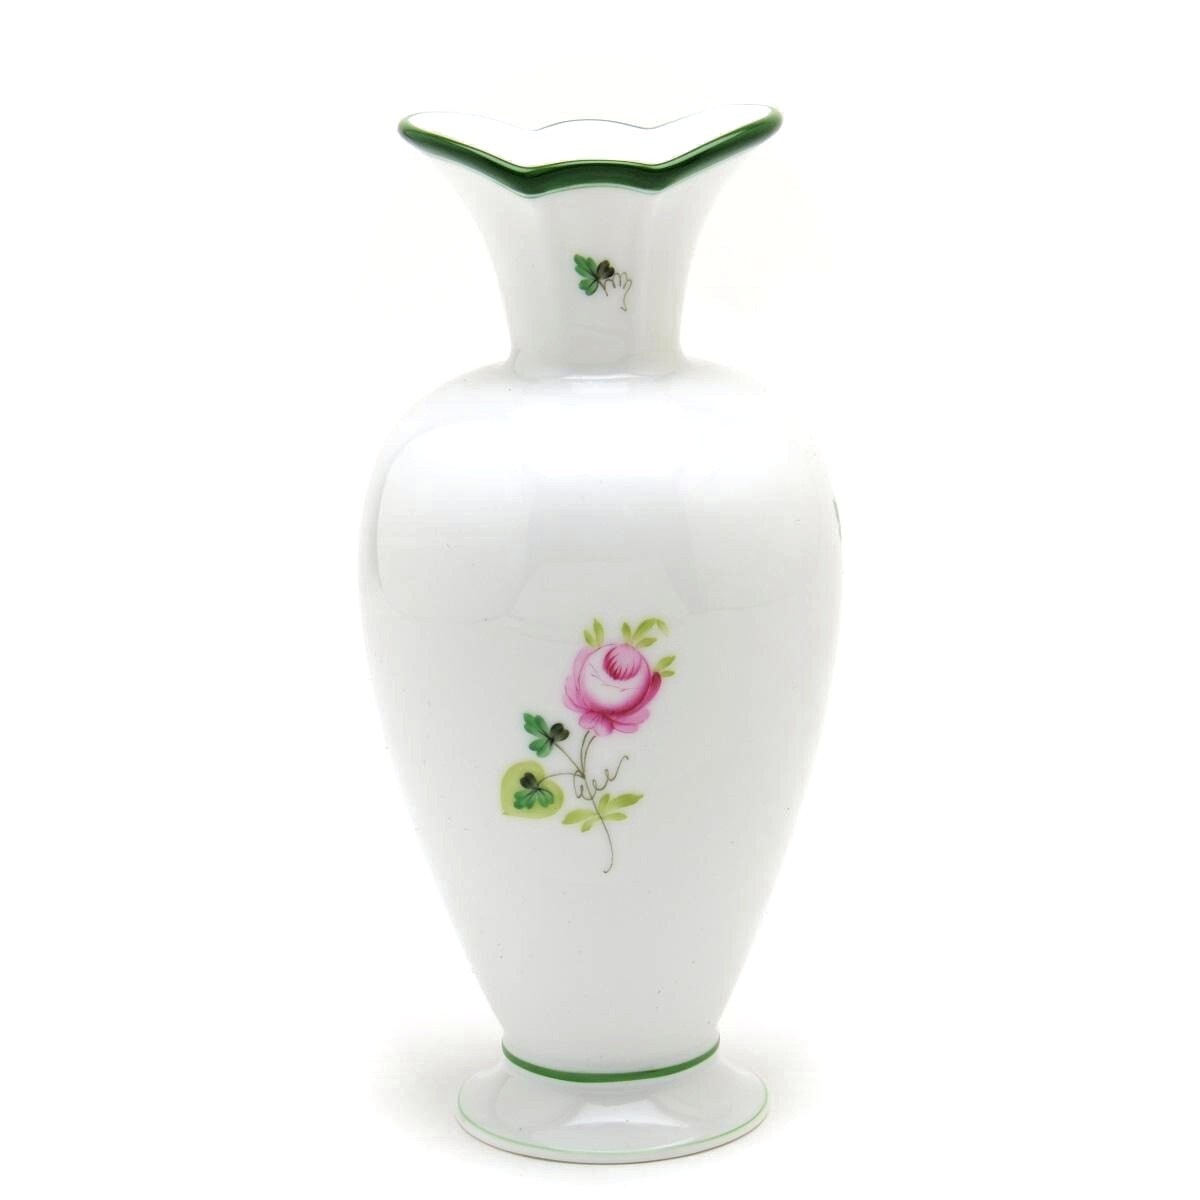 Ваза Herend Vienna Rose (07053) Фарфоровая декоративная ваза с ручной росписью Ваза для цветов Орнамент Сделано в Венгрии Новый Herend, мебель, интерьер, аксессуары для интерьера, ваза